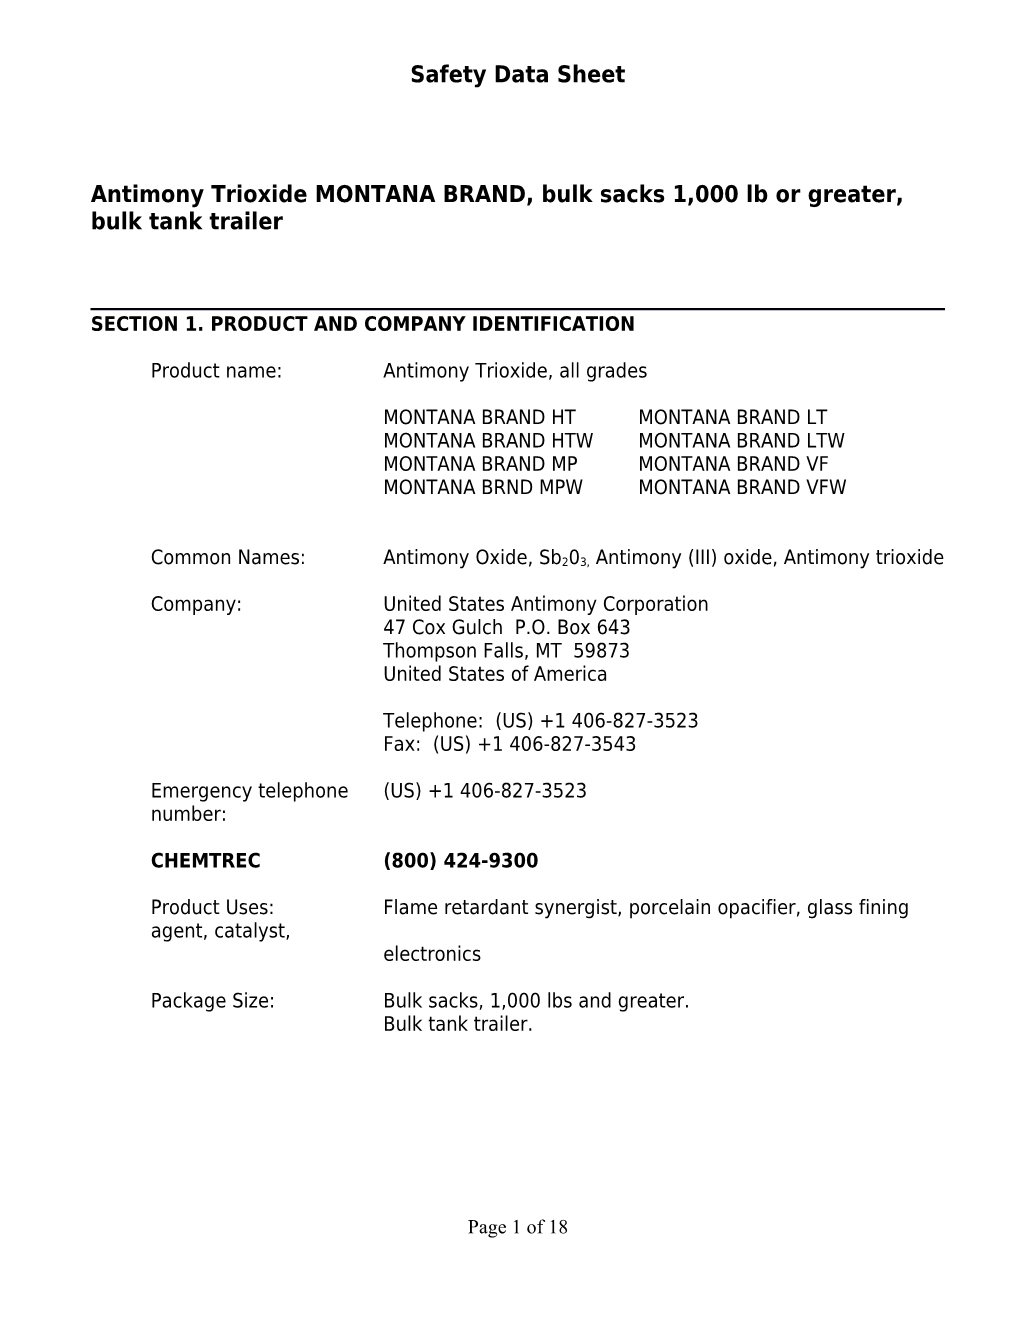 Antimony Trioxide MONTANA BRAND, Bulk Sacks 1,000 Lb Or Greater, Bulk Tank Trailer